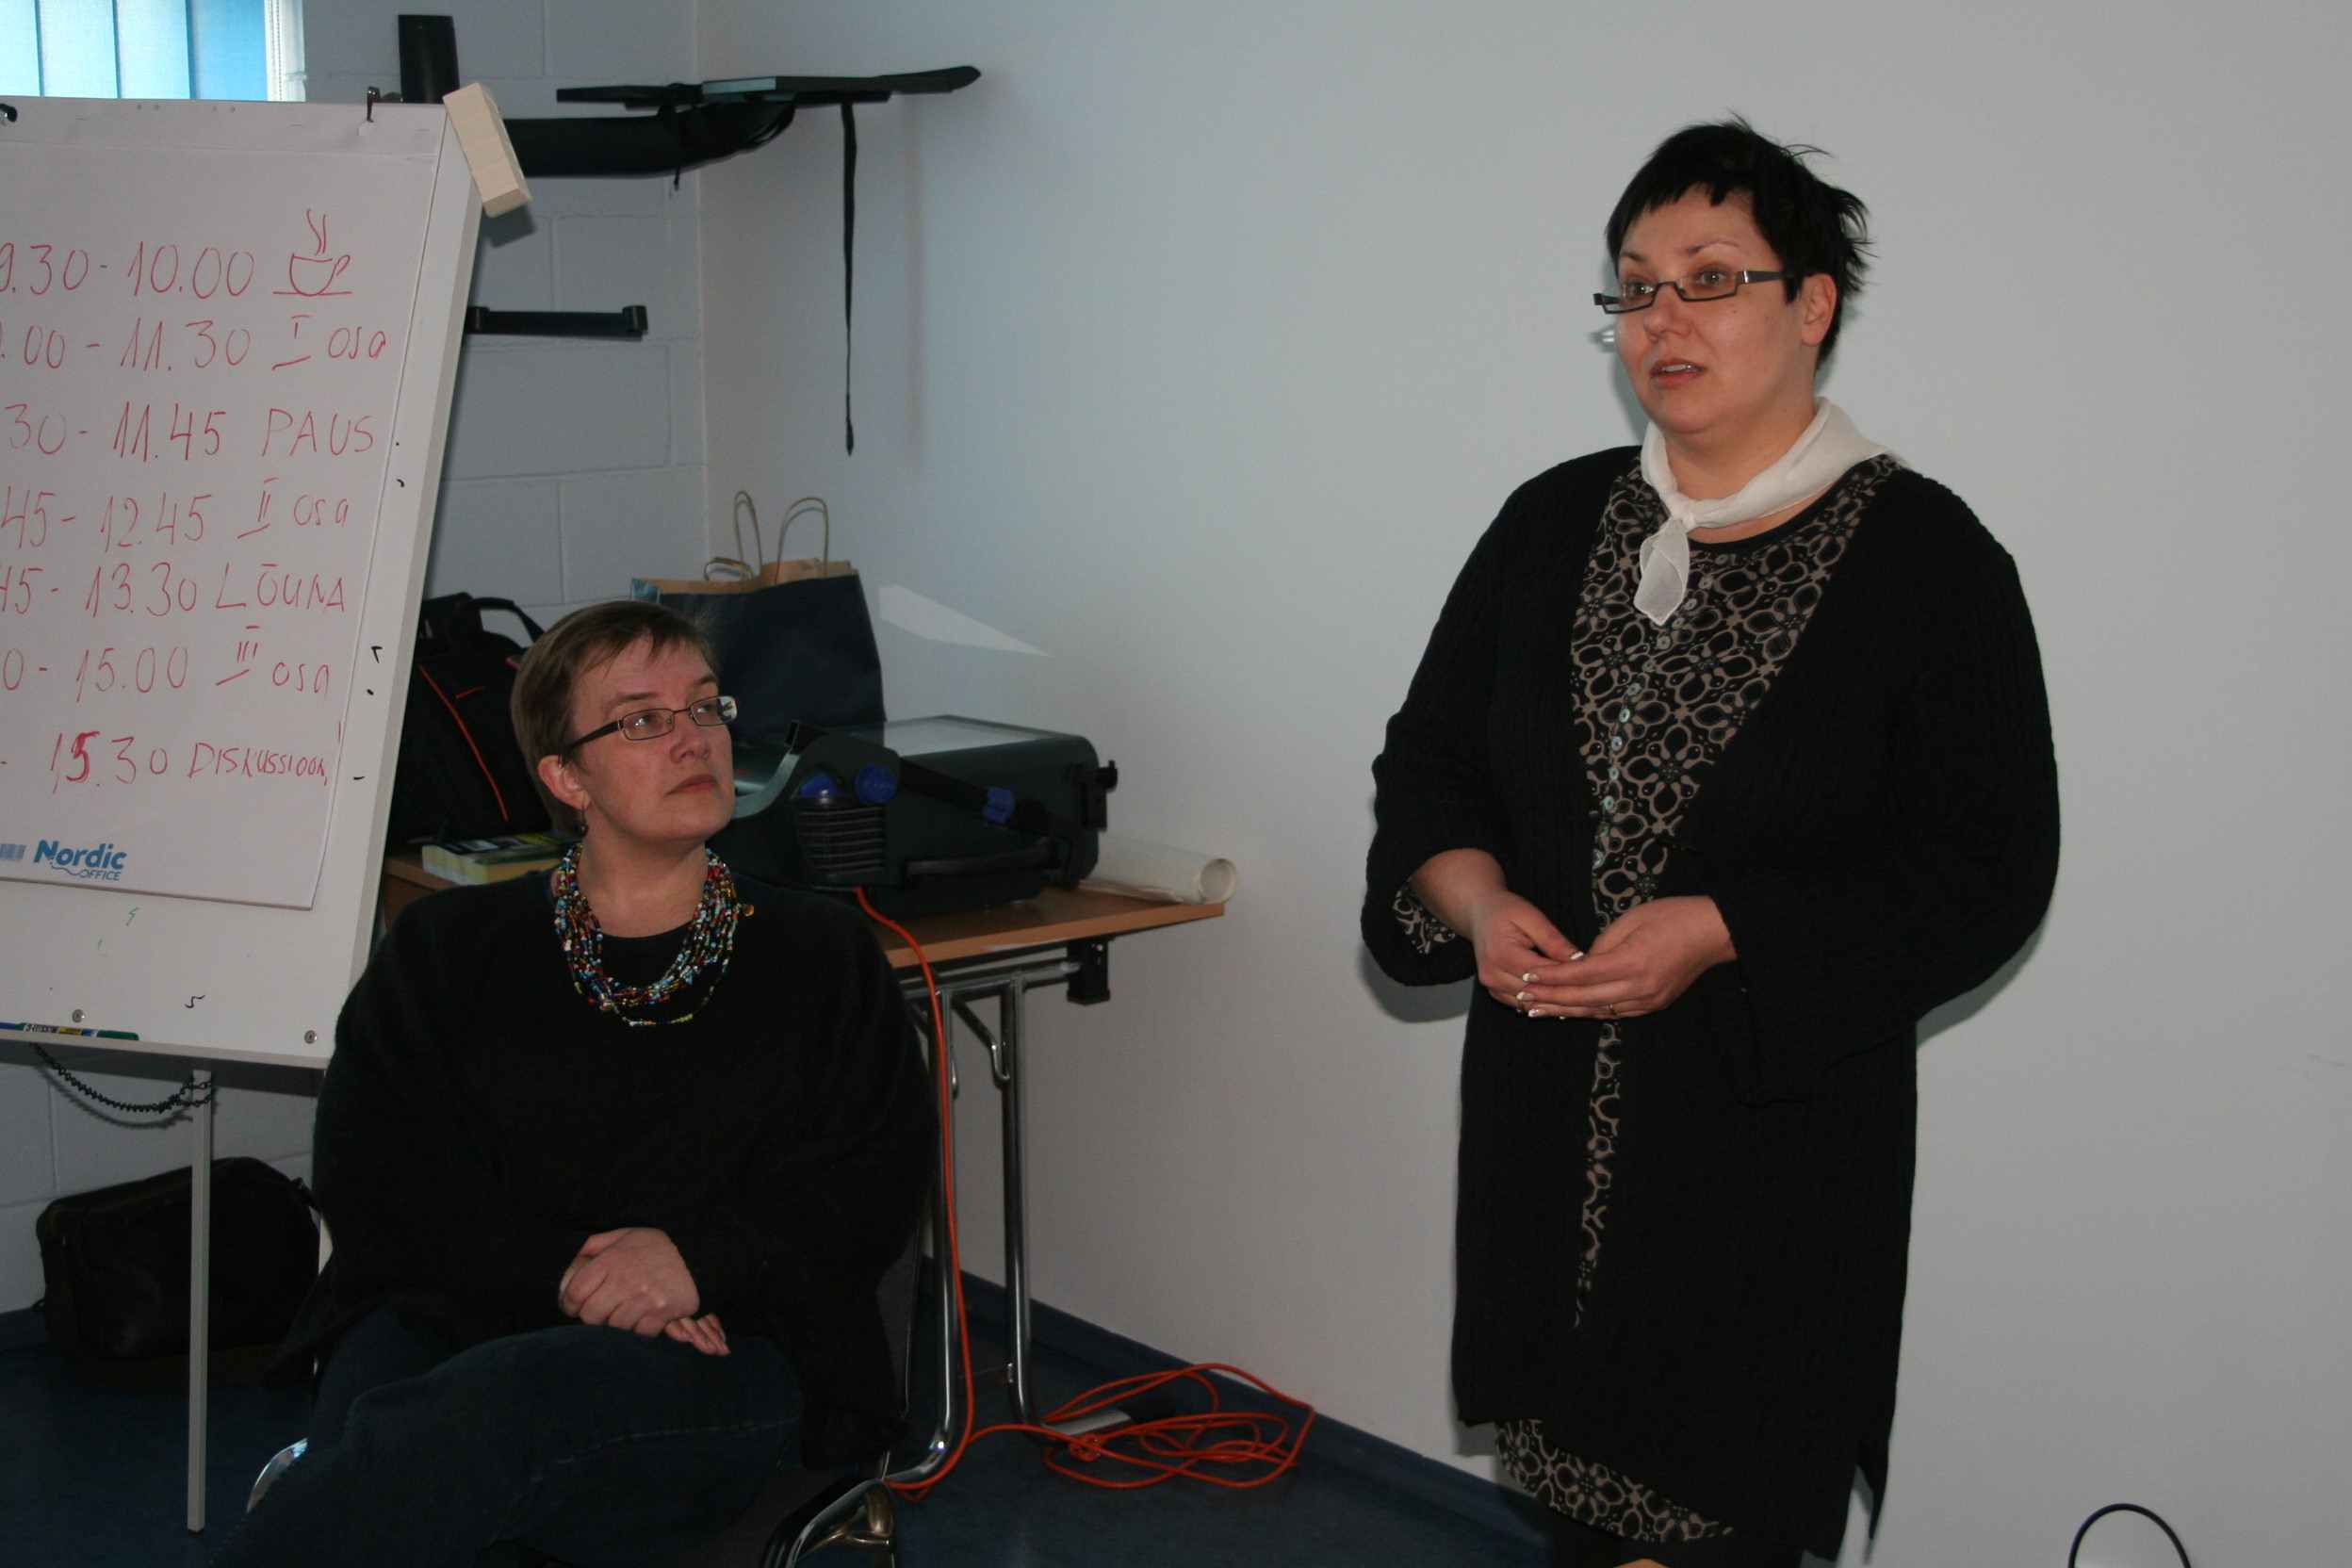 Tolmutõrjeseminar Soomelt Eestile 27. märts 2009